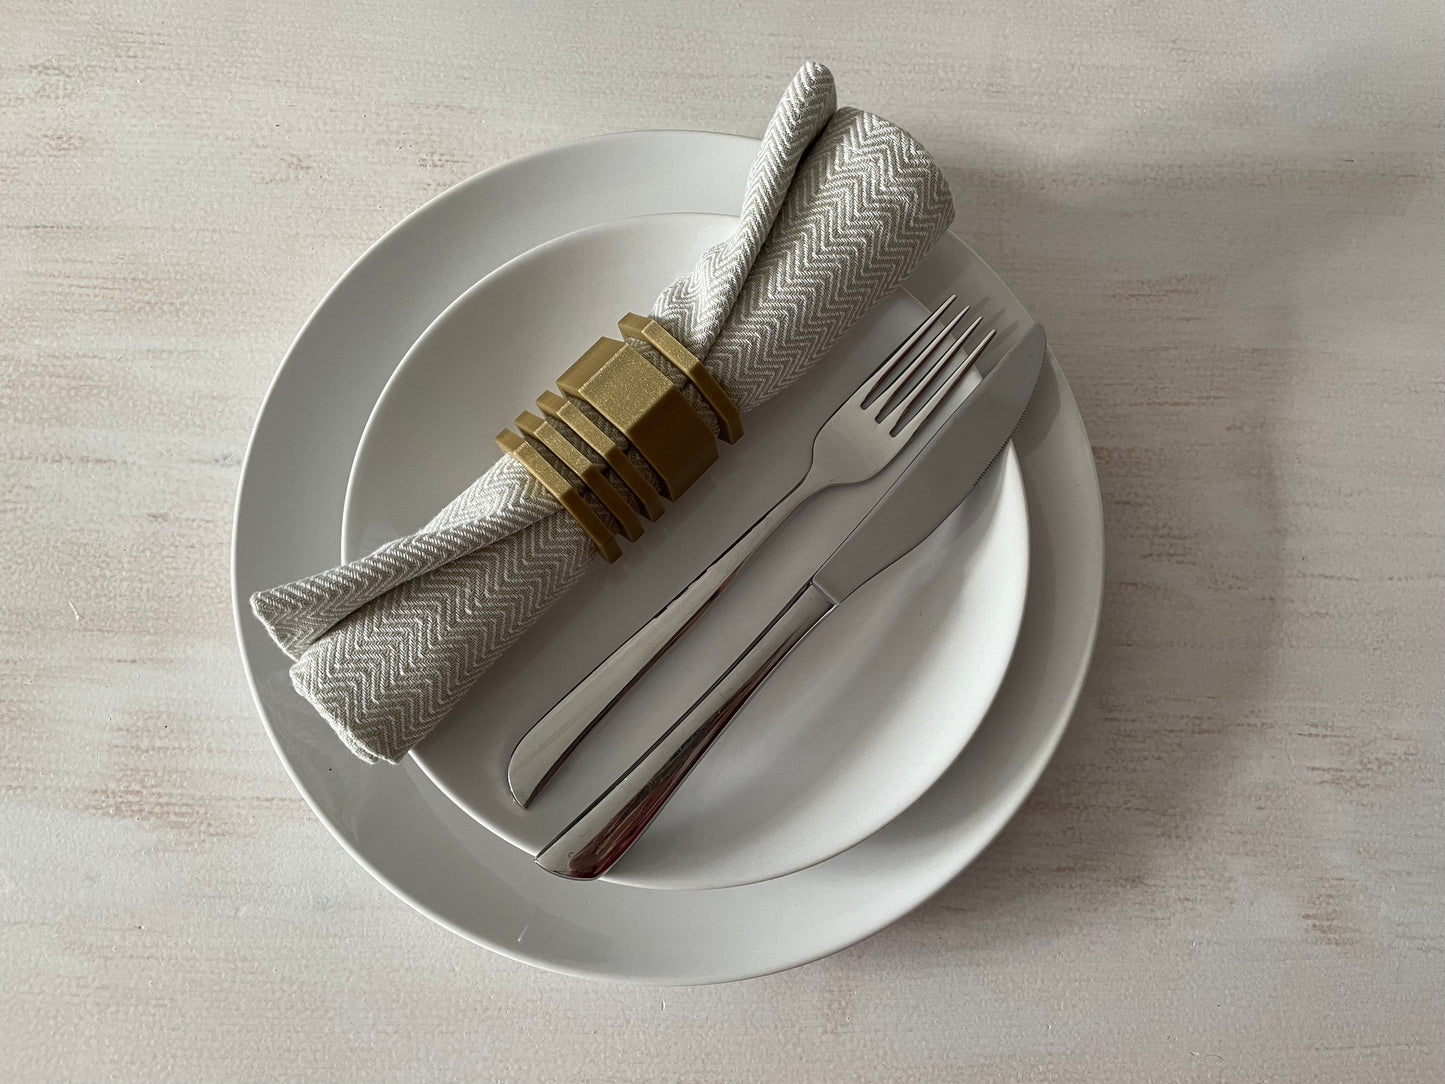 Glänzende Octagon-Serviettenringe - Elegante Tischdekoration für Ihre Hochzeit!